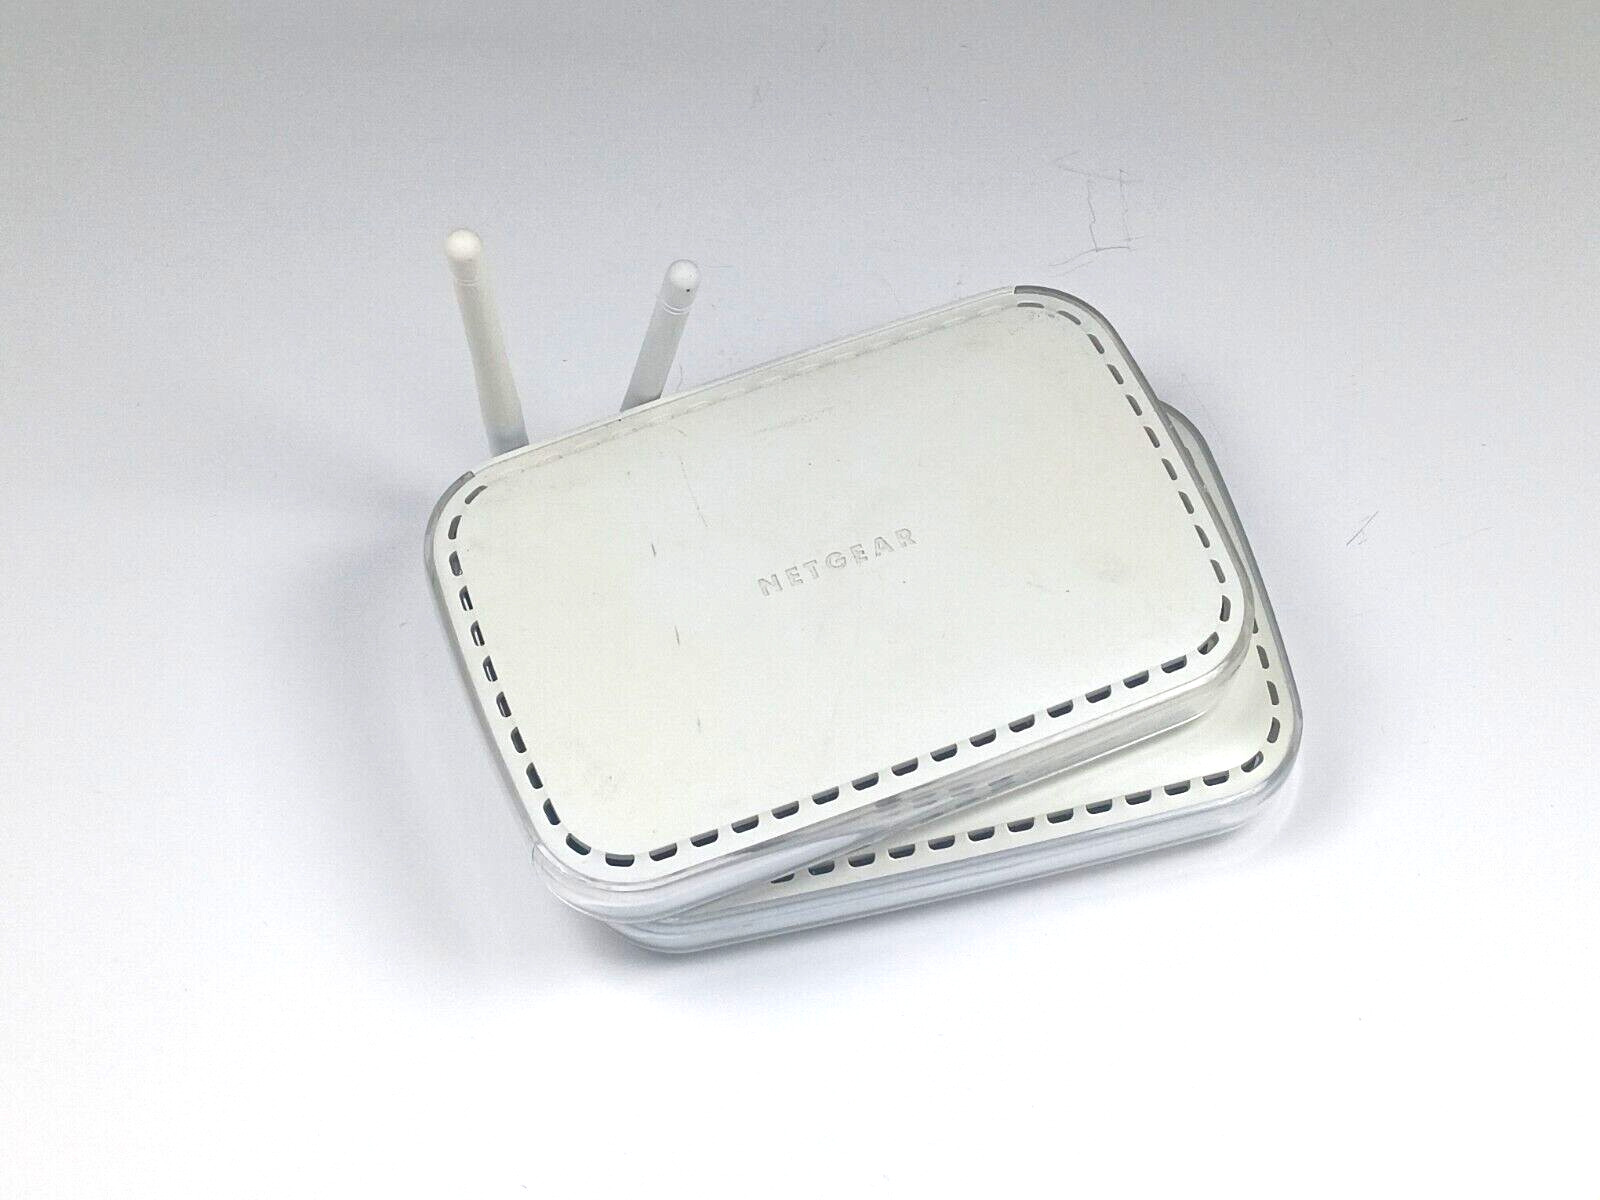 Lot of 2 Netgear WGR614v7 54 Mbps 4-Port 10/100 Wireless Router